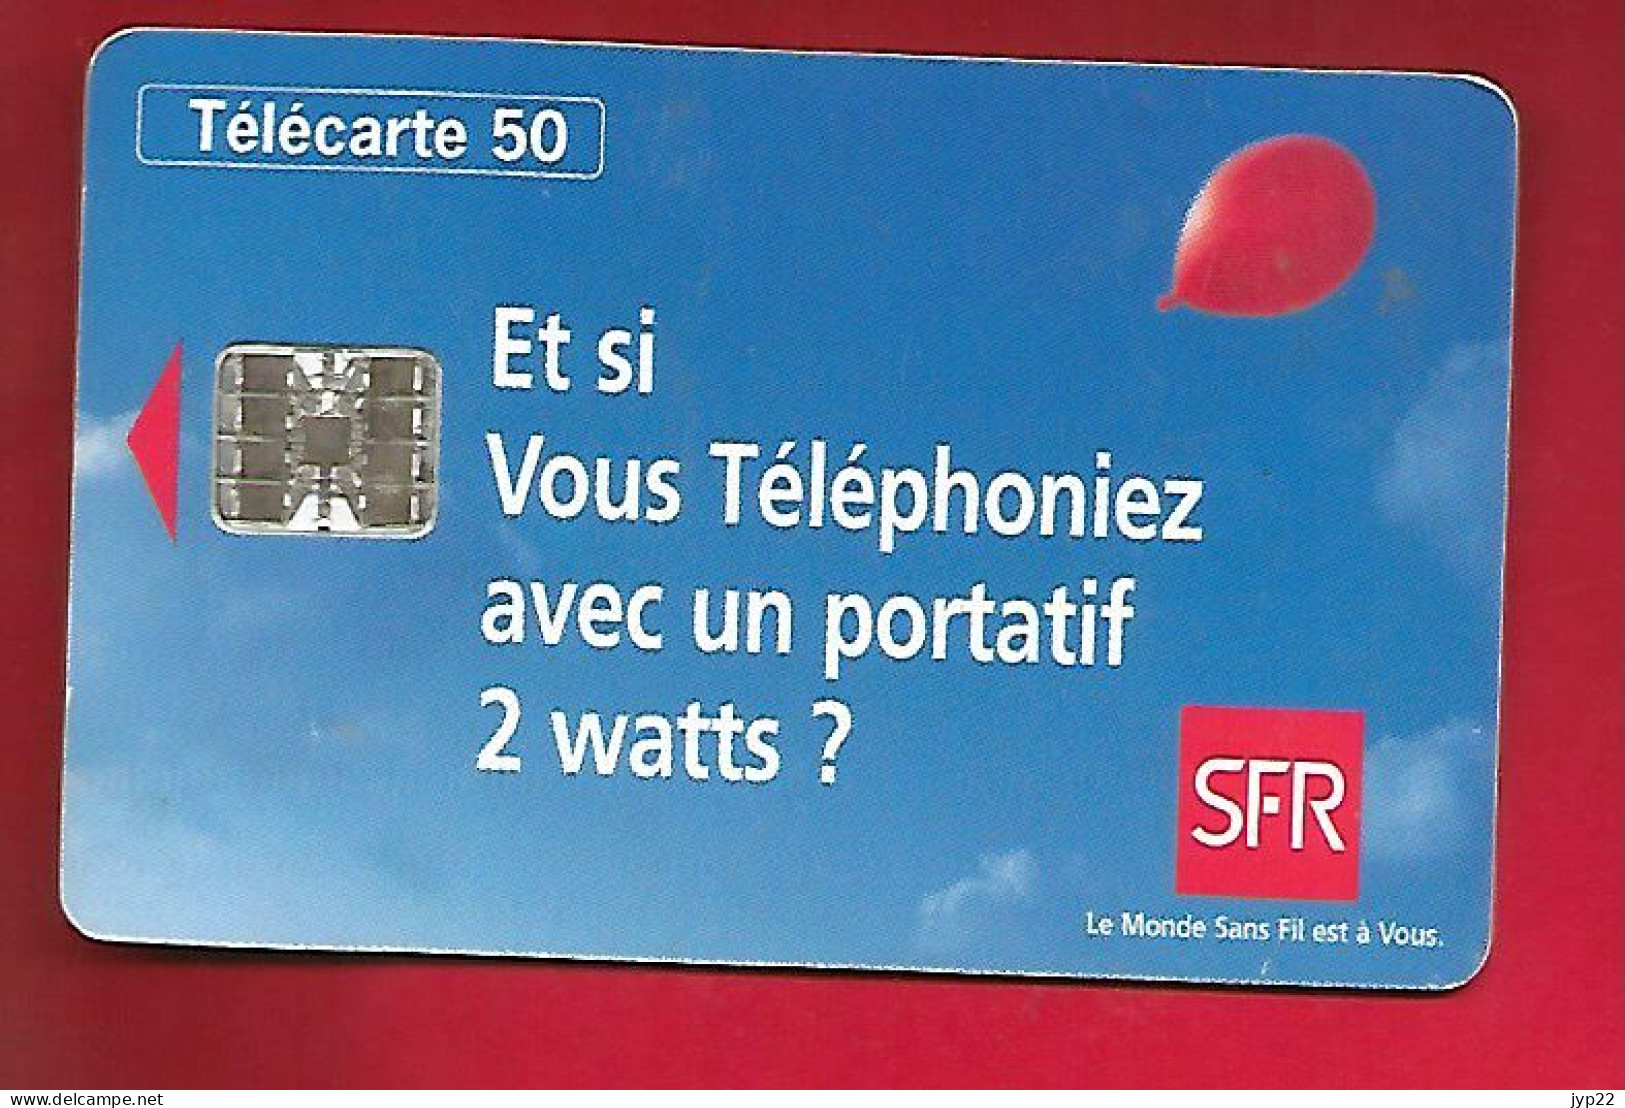 Télécarte Carte Téléphonique 50 Unités 1995 France Télécom SFR Le Réseau Des Portatifs 2 Watts - Operatori Telecom